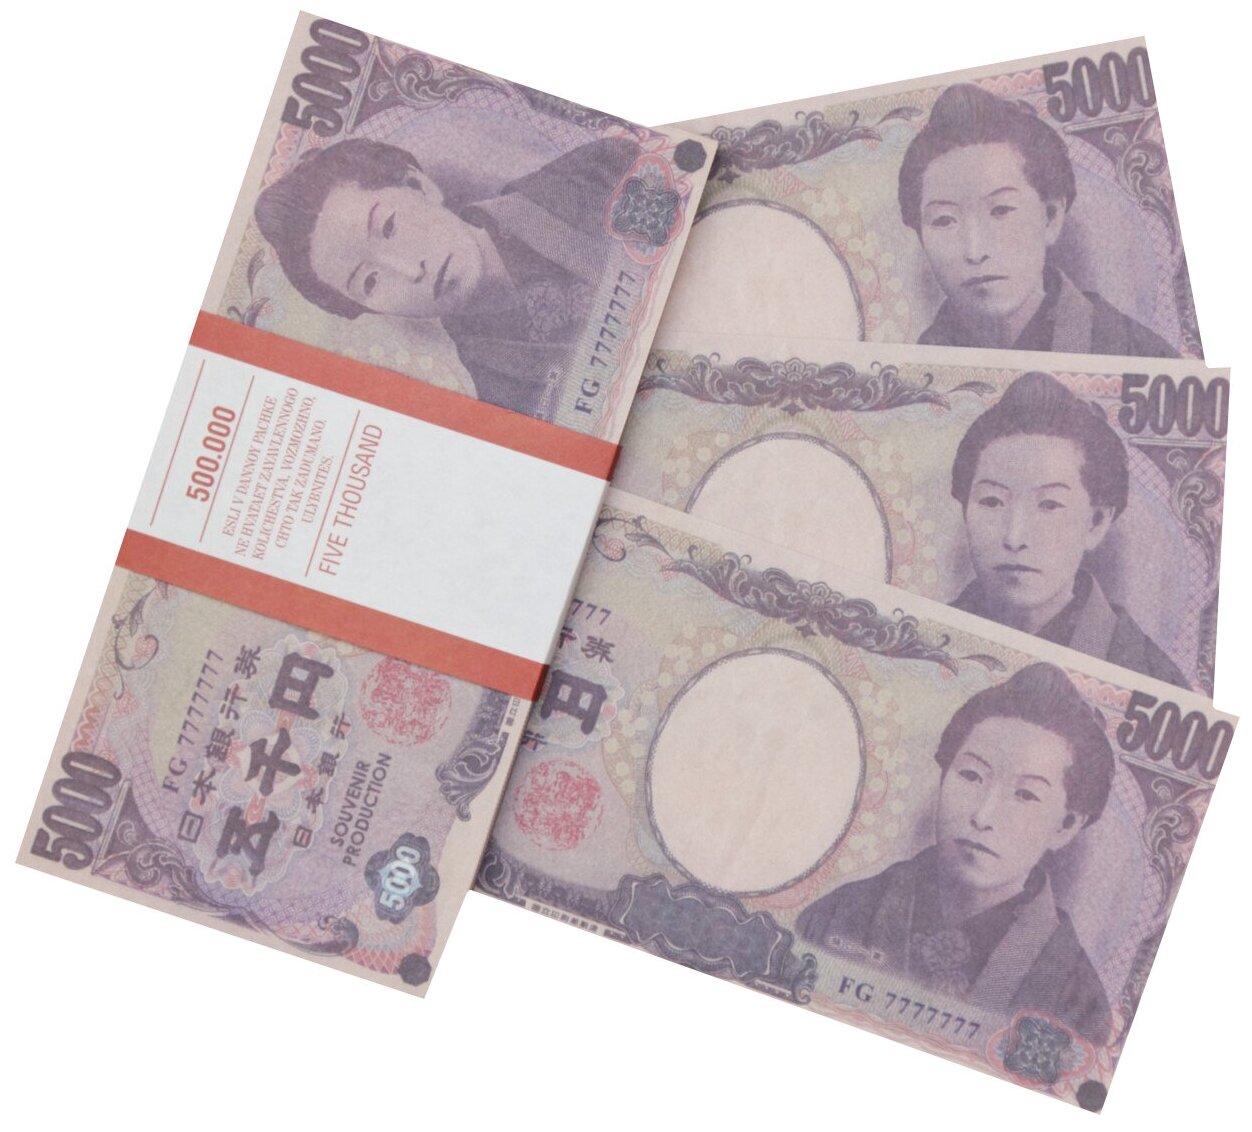 Забавная пачка денег 5000 йен, сувенирные деньги для розыгрышей и приколов